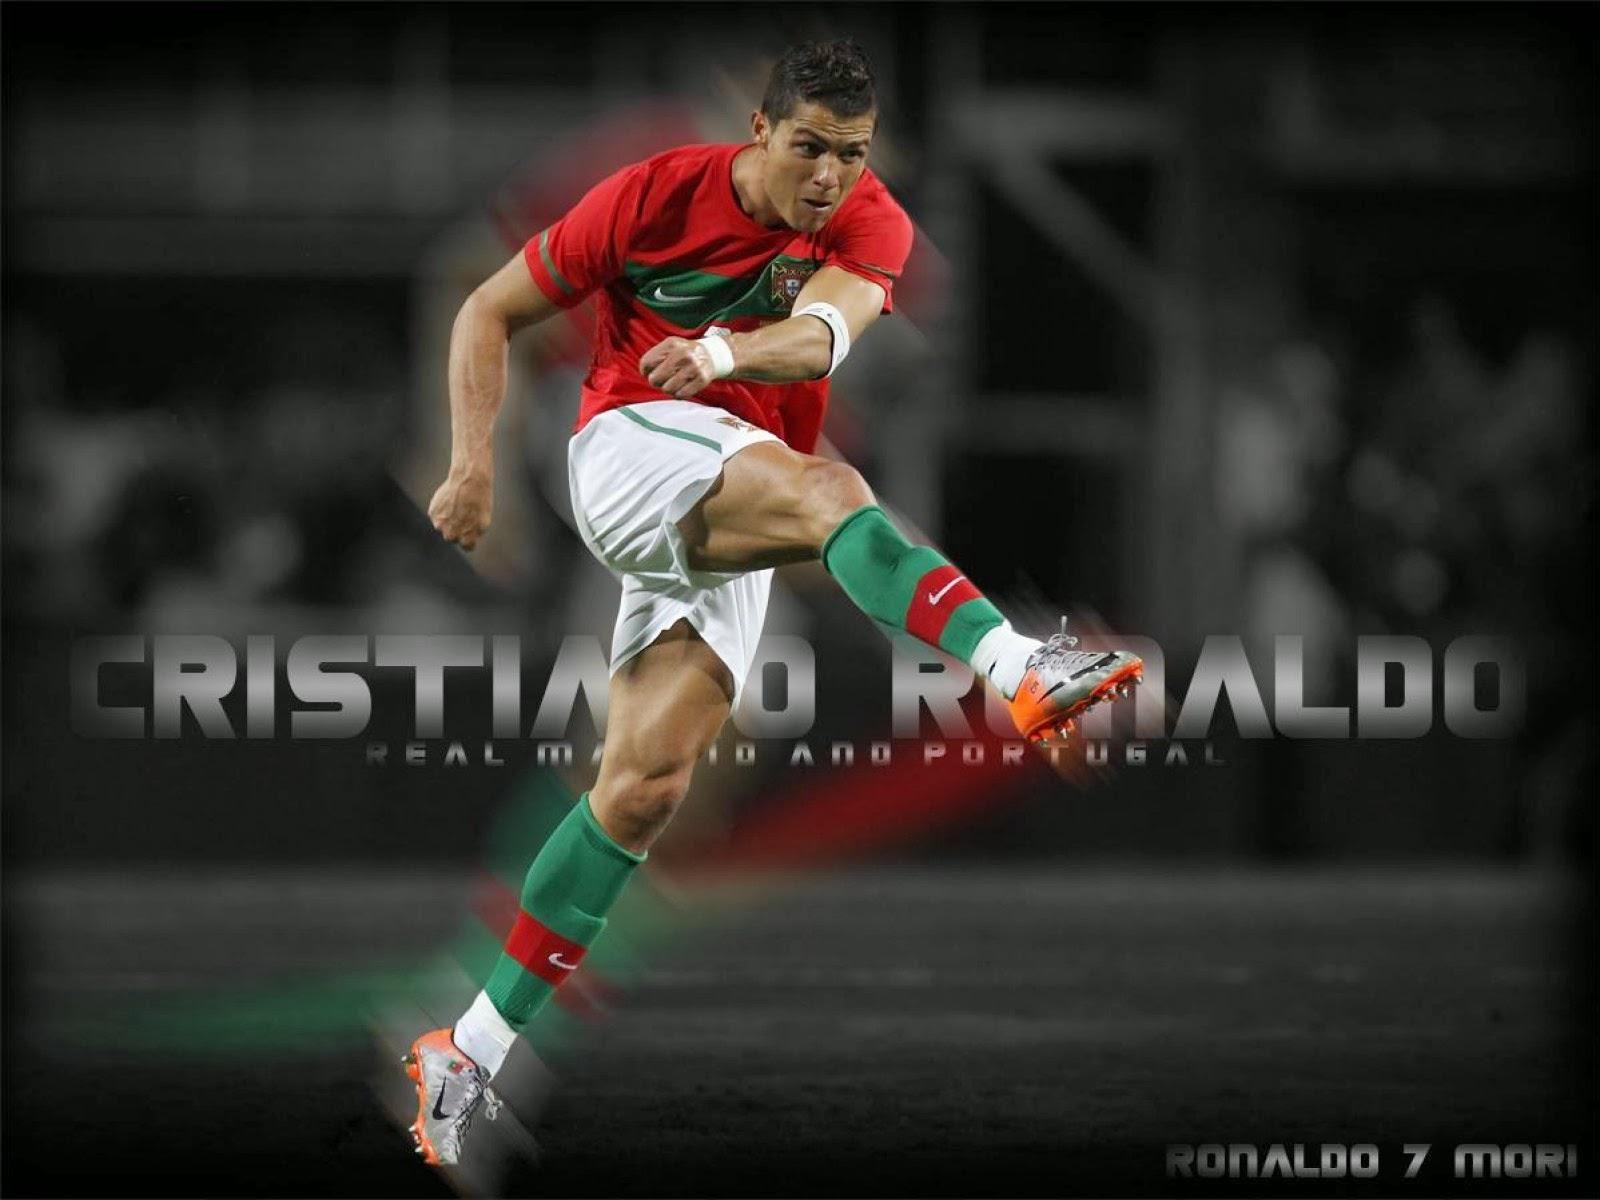 Fifa World Cup 2014 FW Cristiano Ronaldo Portugal Player wallpaper